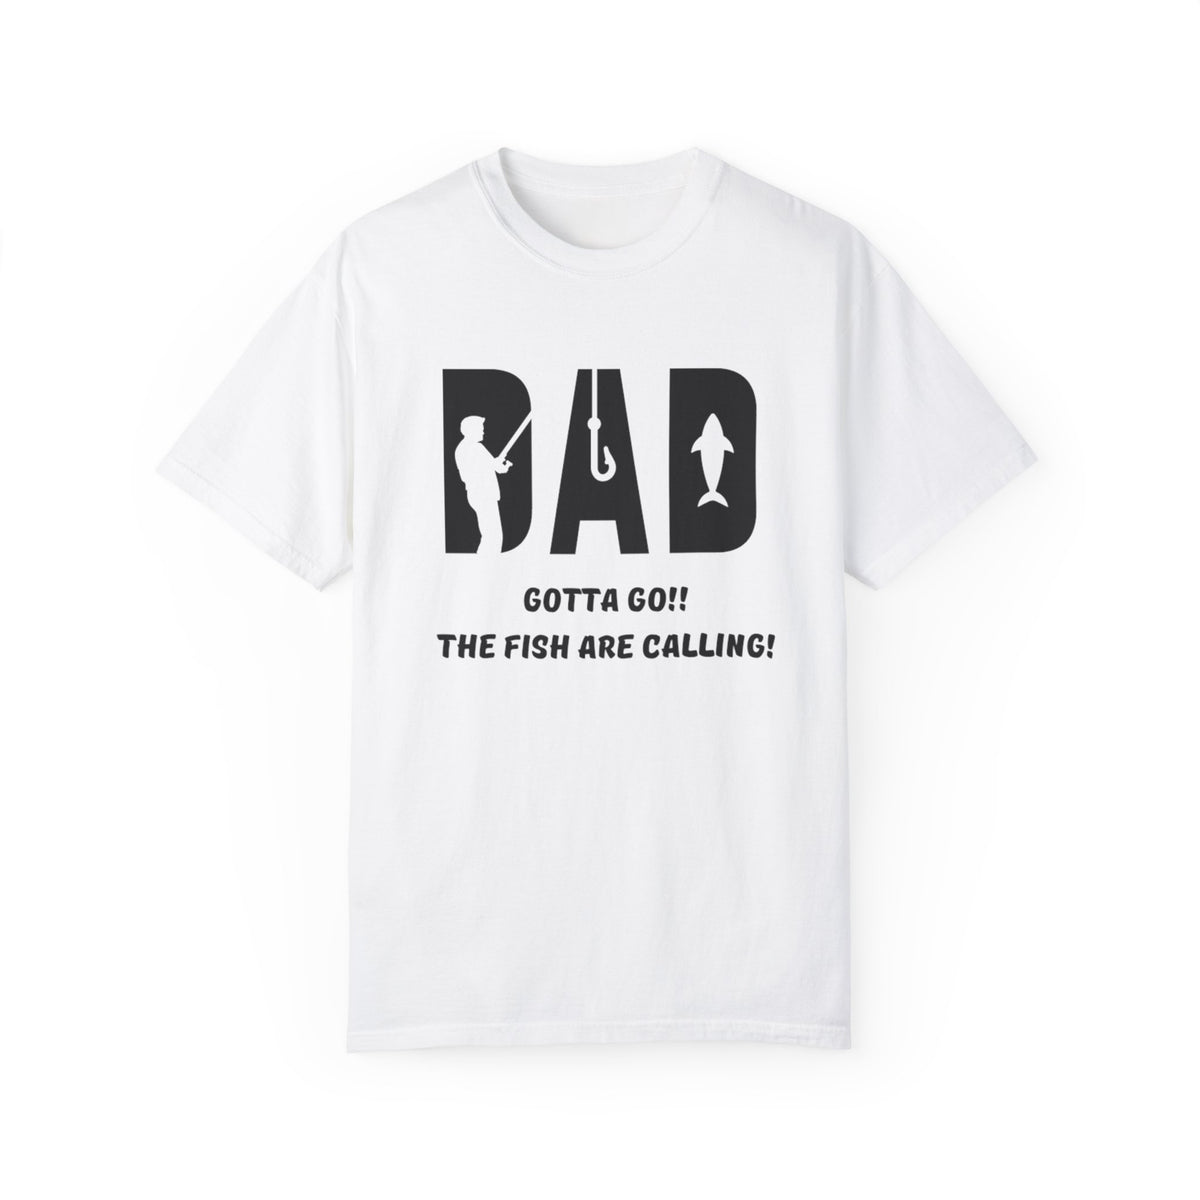 Dad "Gotta go" Fishing T-shirt